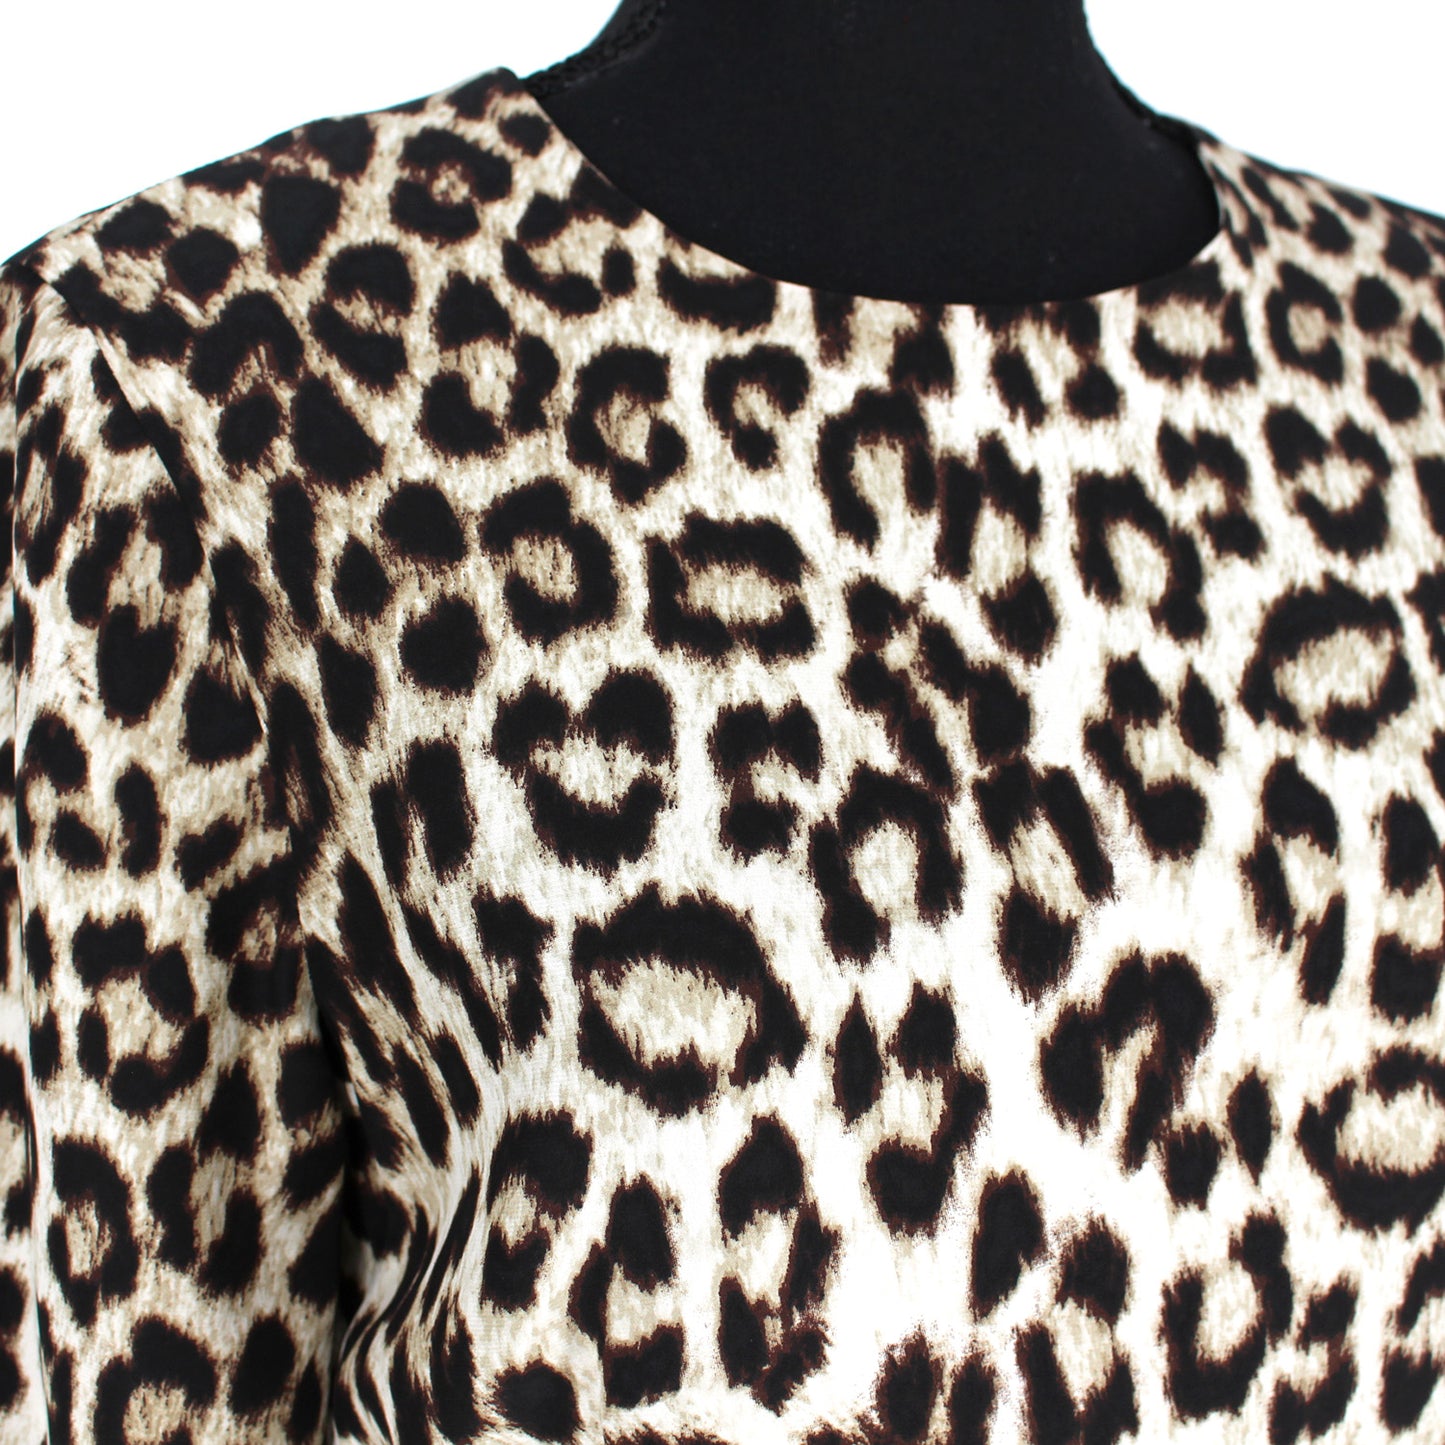 Rag & Bone Leopard Mini Dress